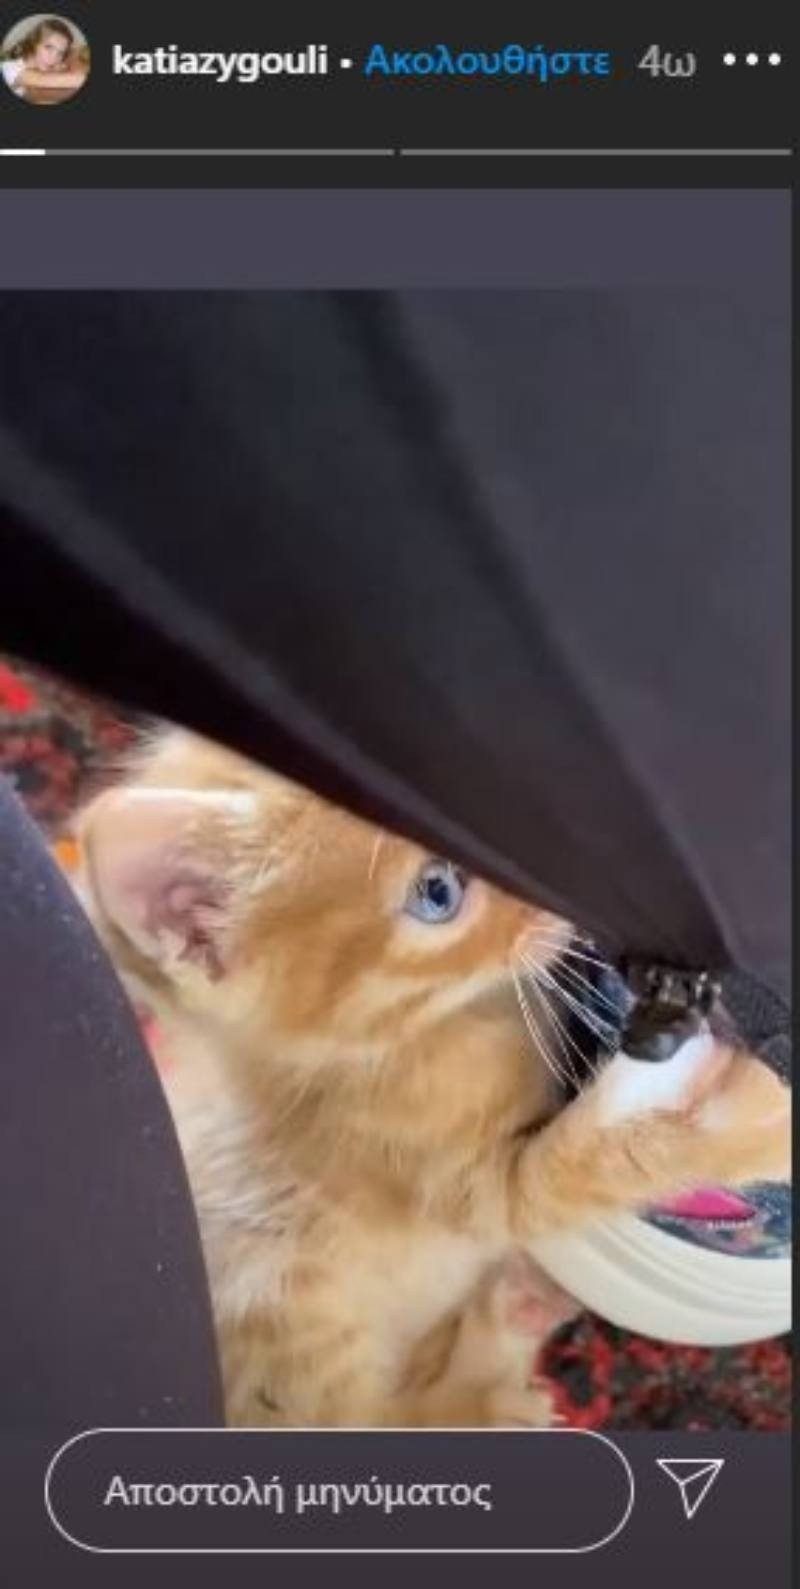 Κάτια Ζυγούλη Σάκης Ρουβάς γατάκι βίντεο instagram 